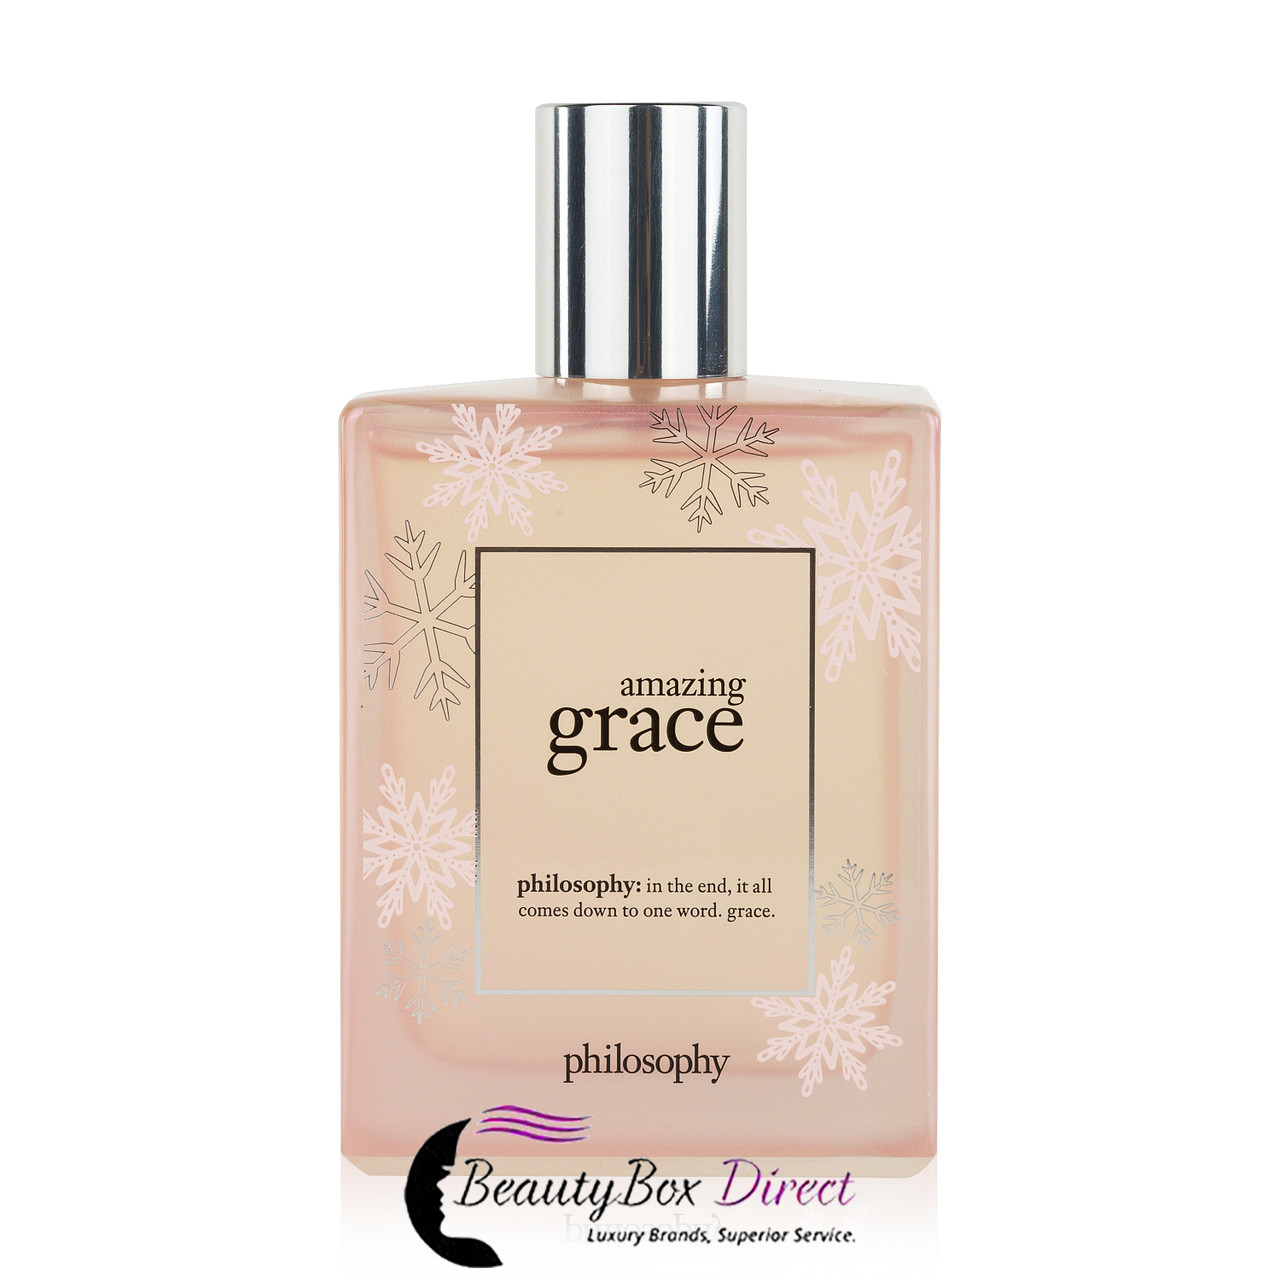 Pure Grace by Philosophy (Eau de Toilette) » Reviews & Perfume Facts